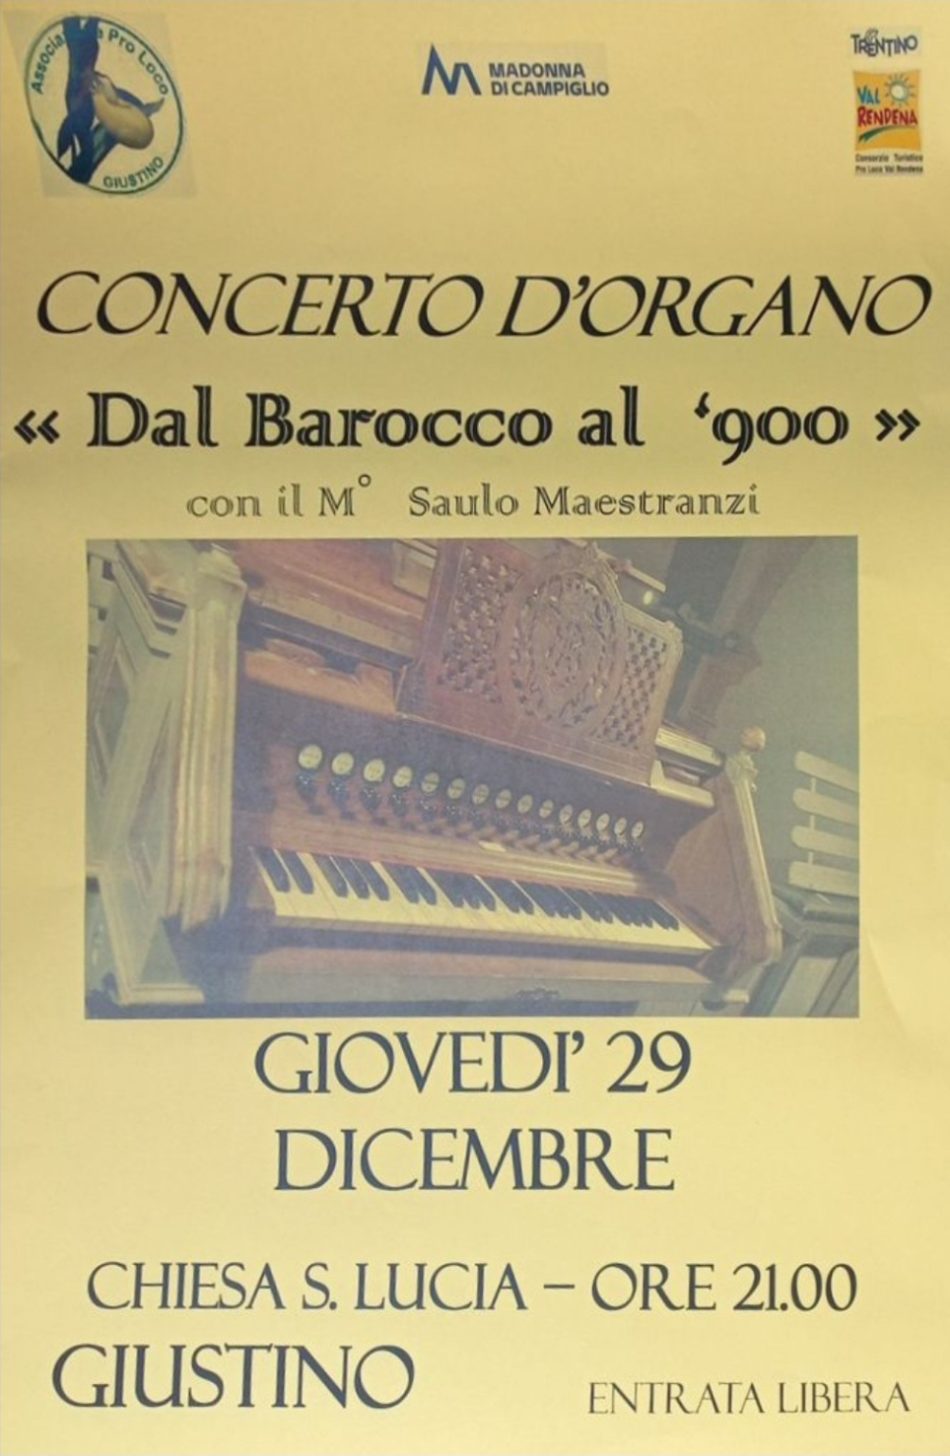 Giustino 29 dicembre: Concerto d’organo “Dal Barocco al ‘900”